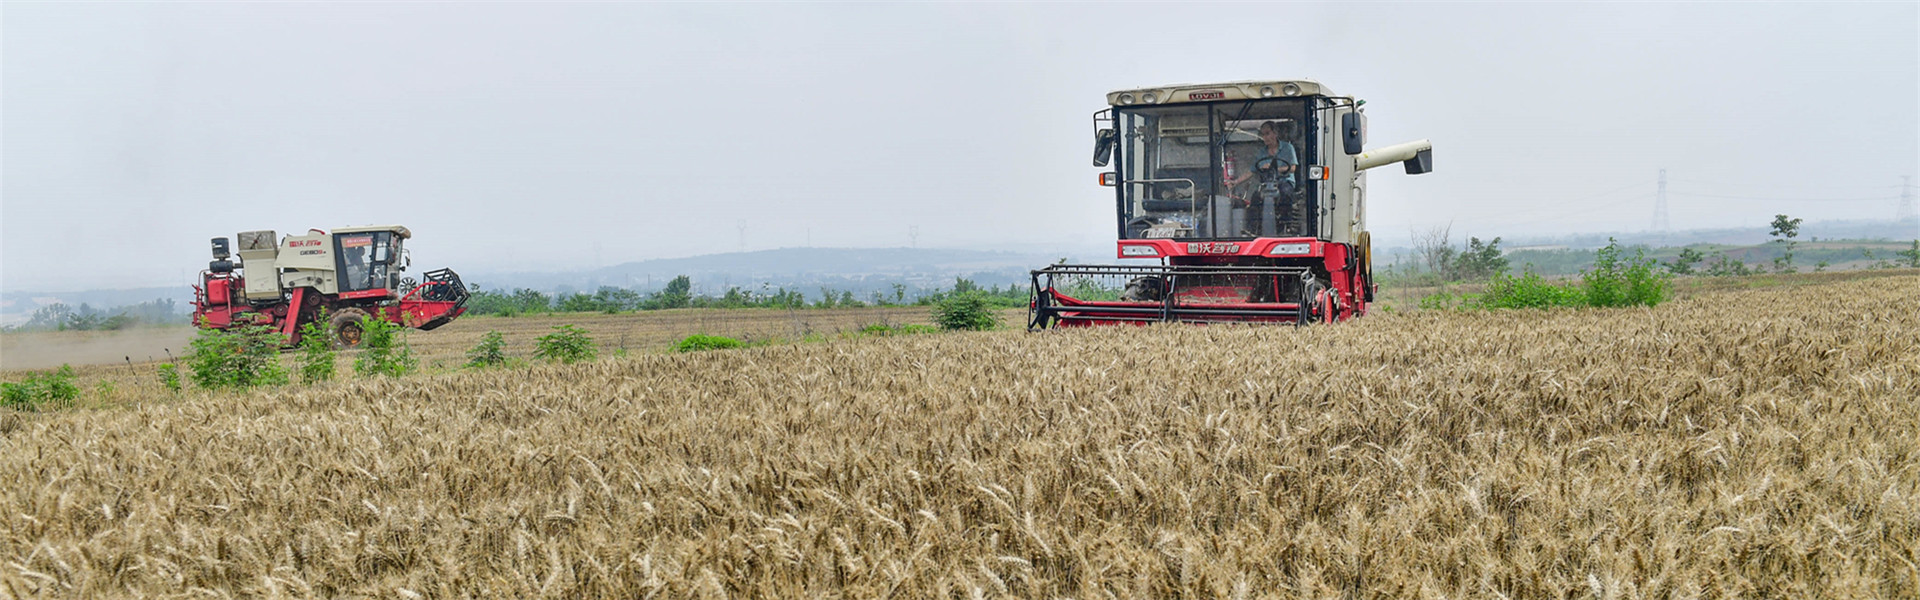 【在希望的田野上】全国麦收进度过一成